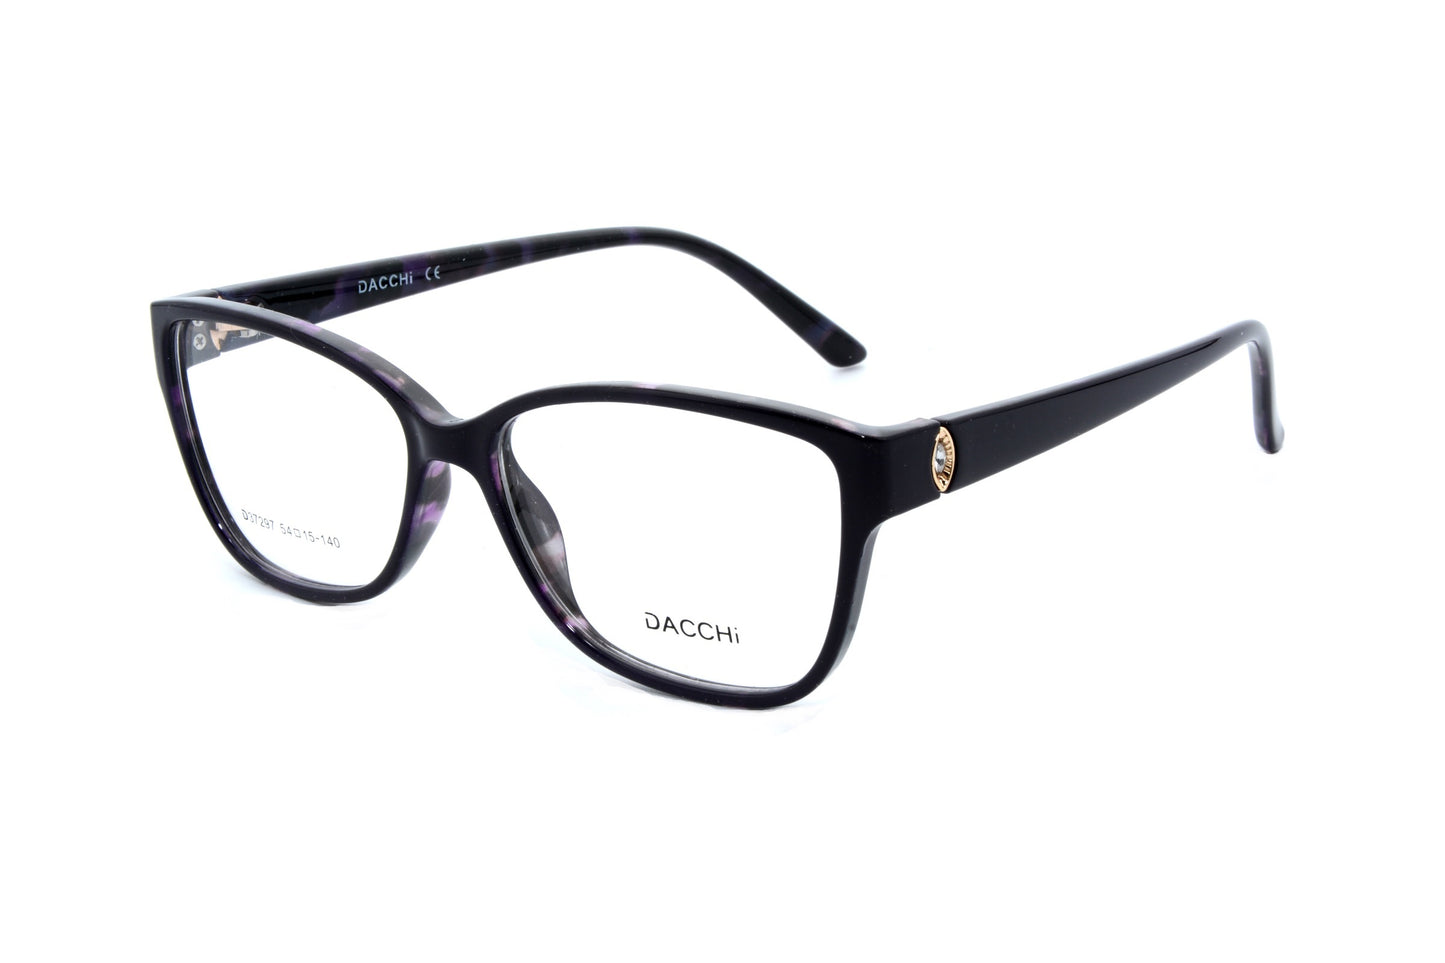 Dacchi eyewear 37297, C4